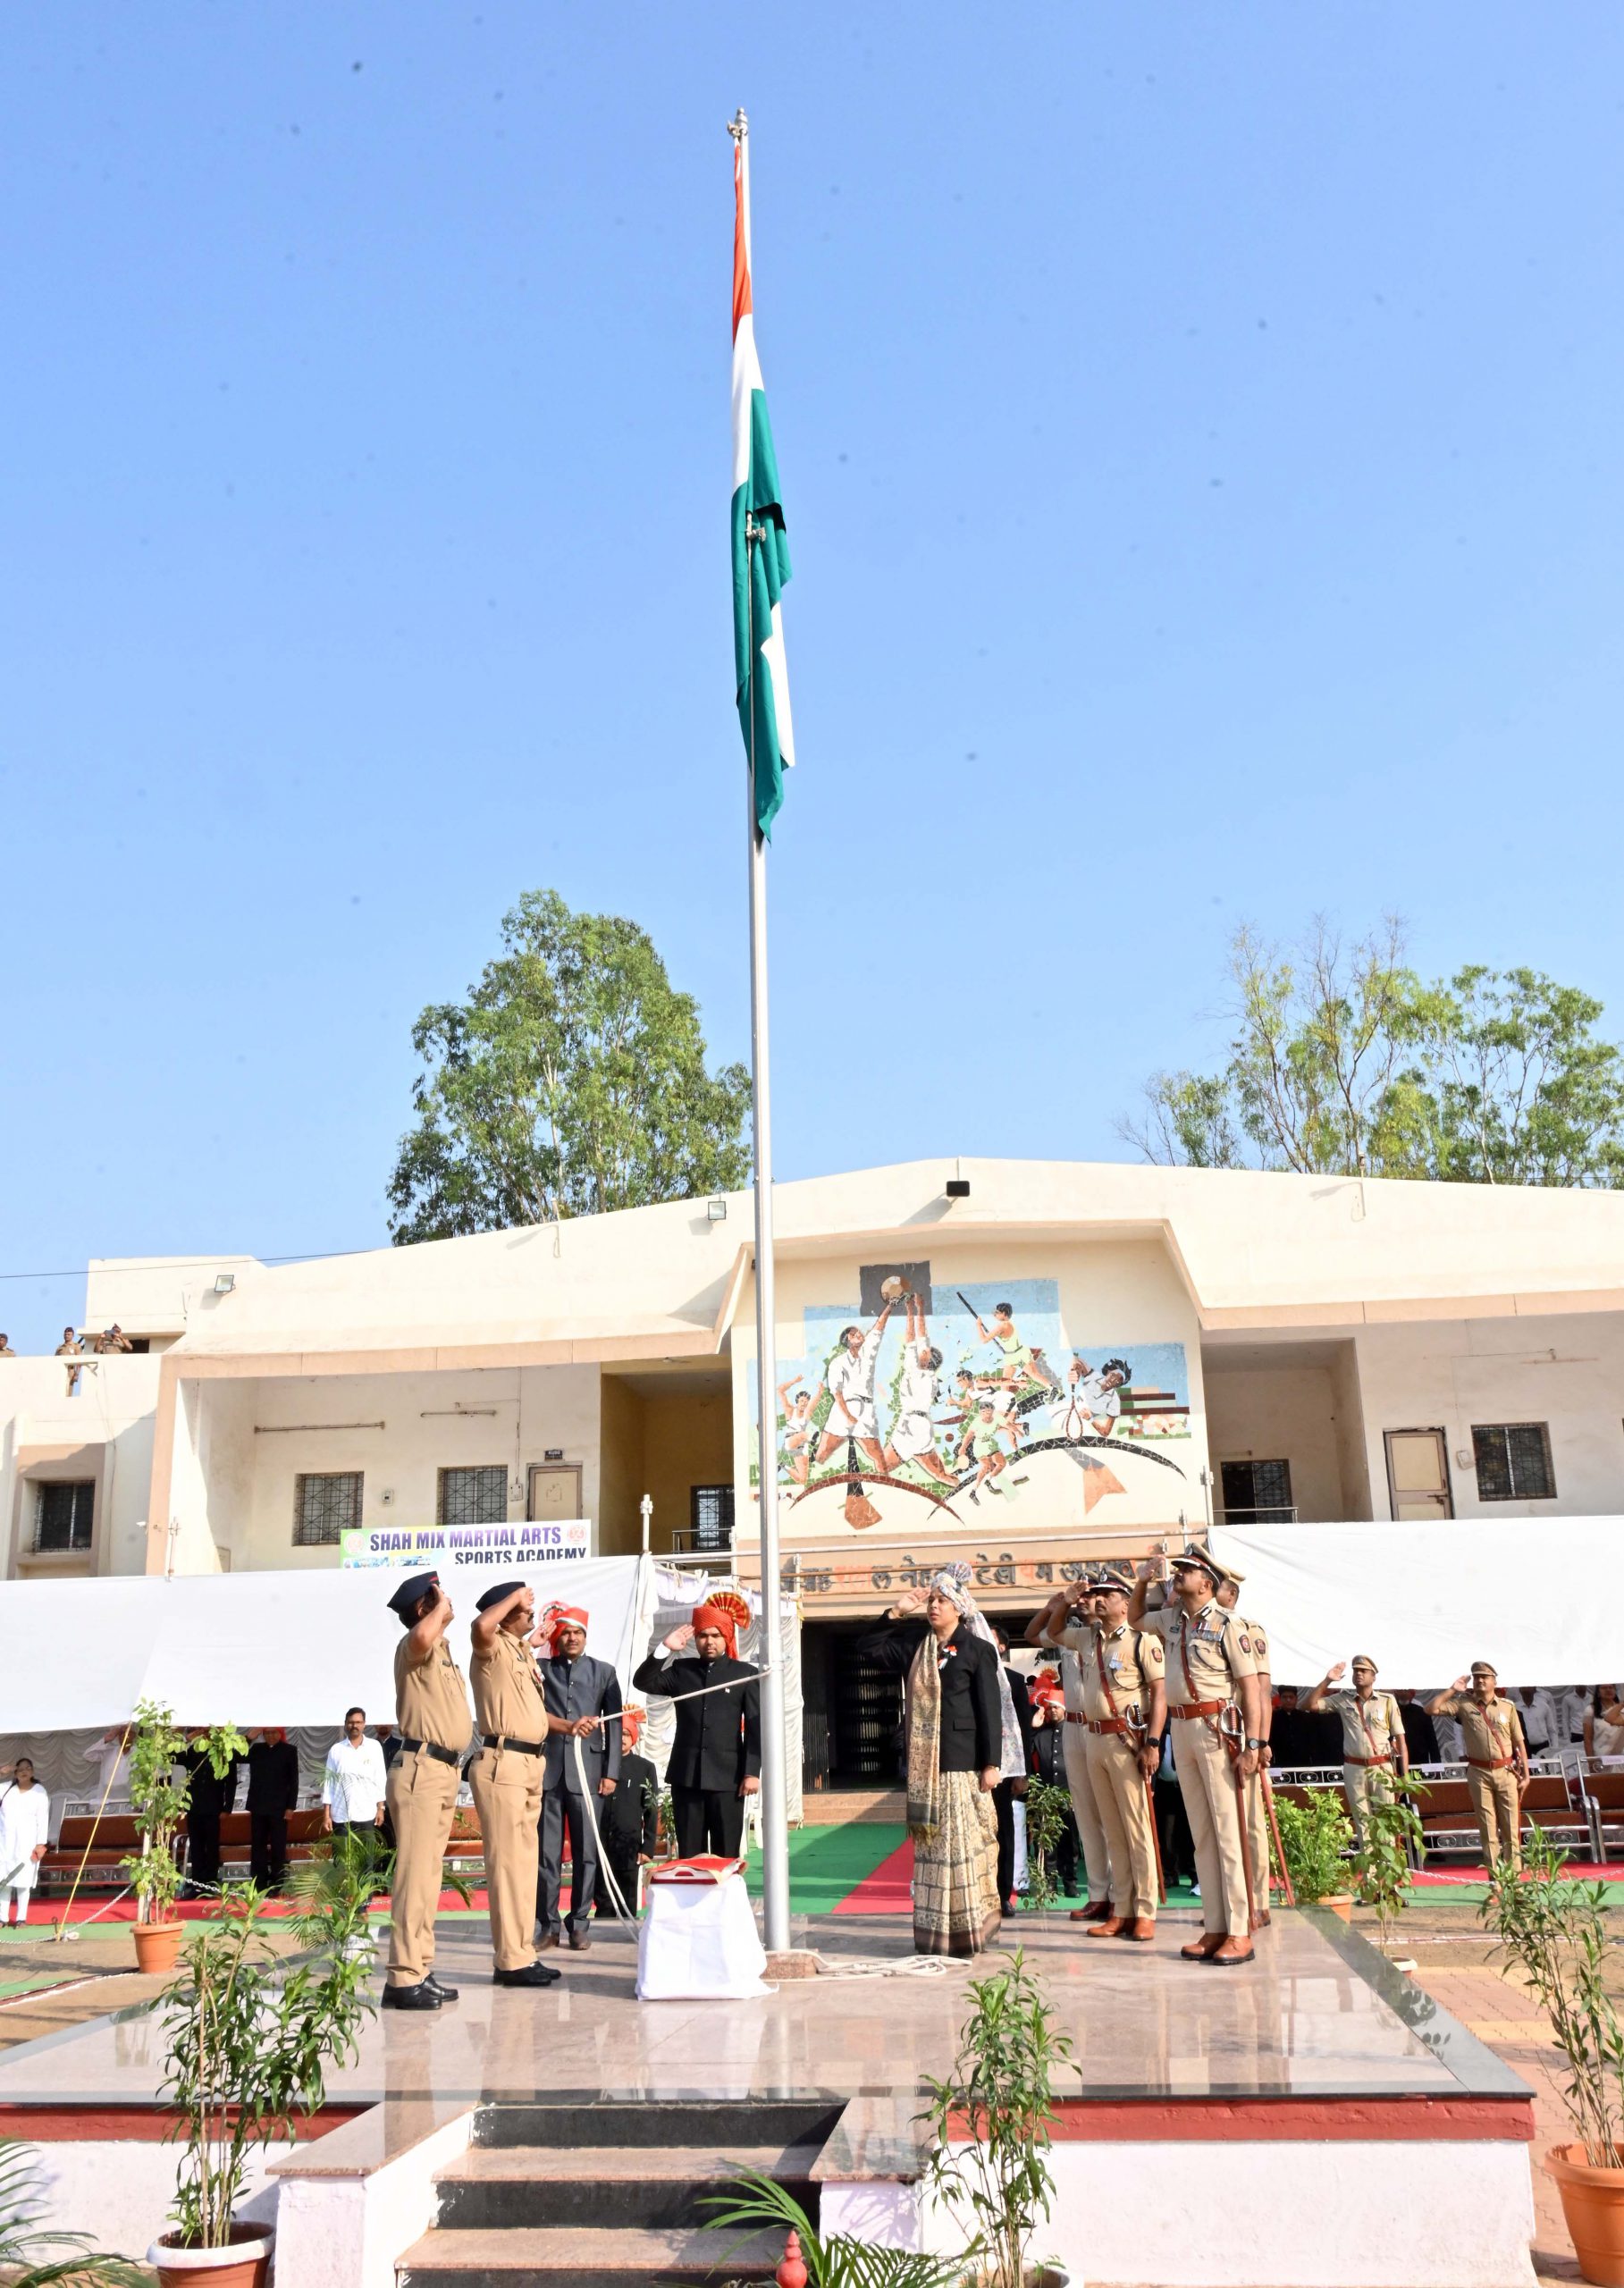 NKN 9152 scaled 9hDDgs जिल्ह्यात महाराष्ट्र दिन उत्साहात साजरा; मुख्य शासकीय सोहळ्यात विभागीय आयुक्तांच्या हस्ते ध्वजारोहण             